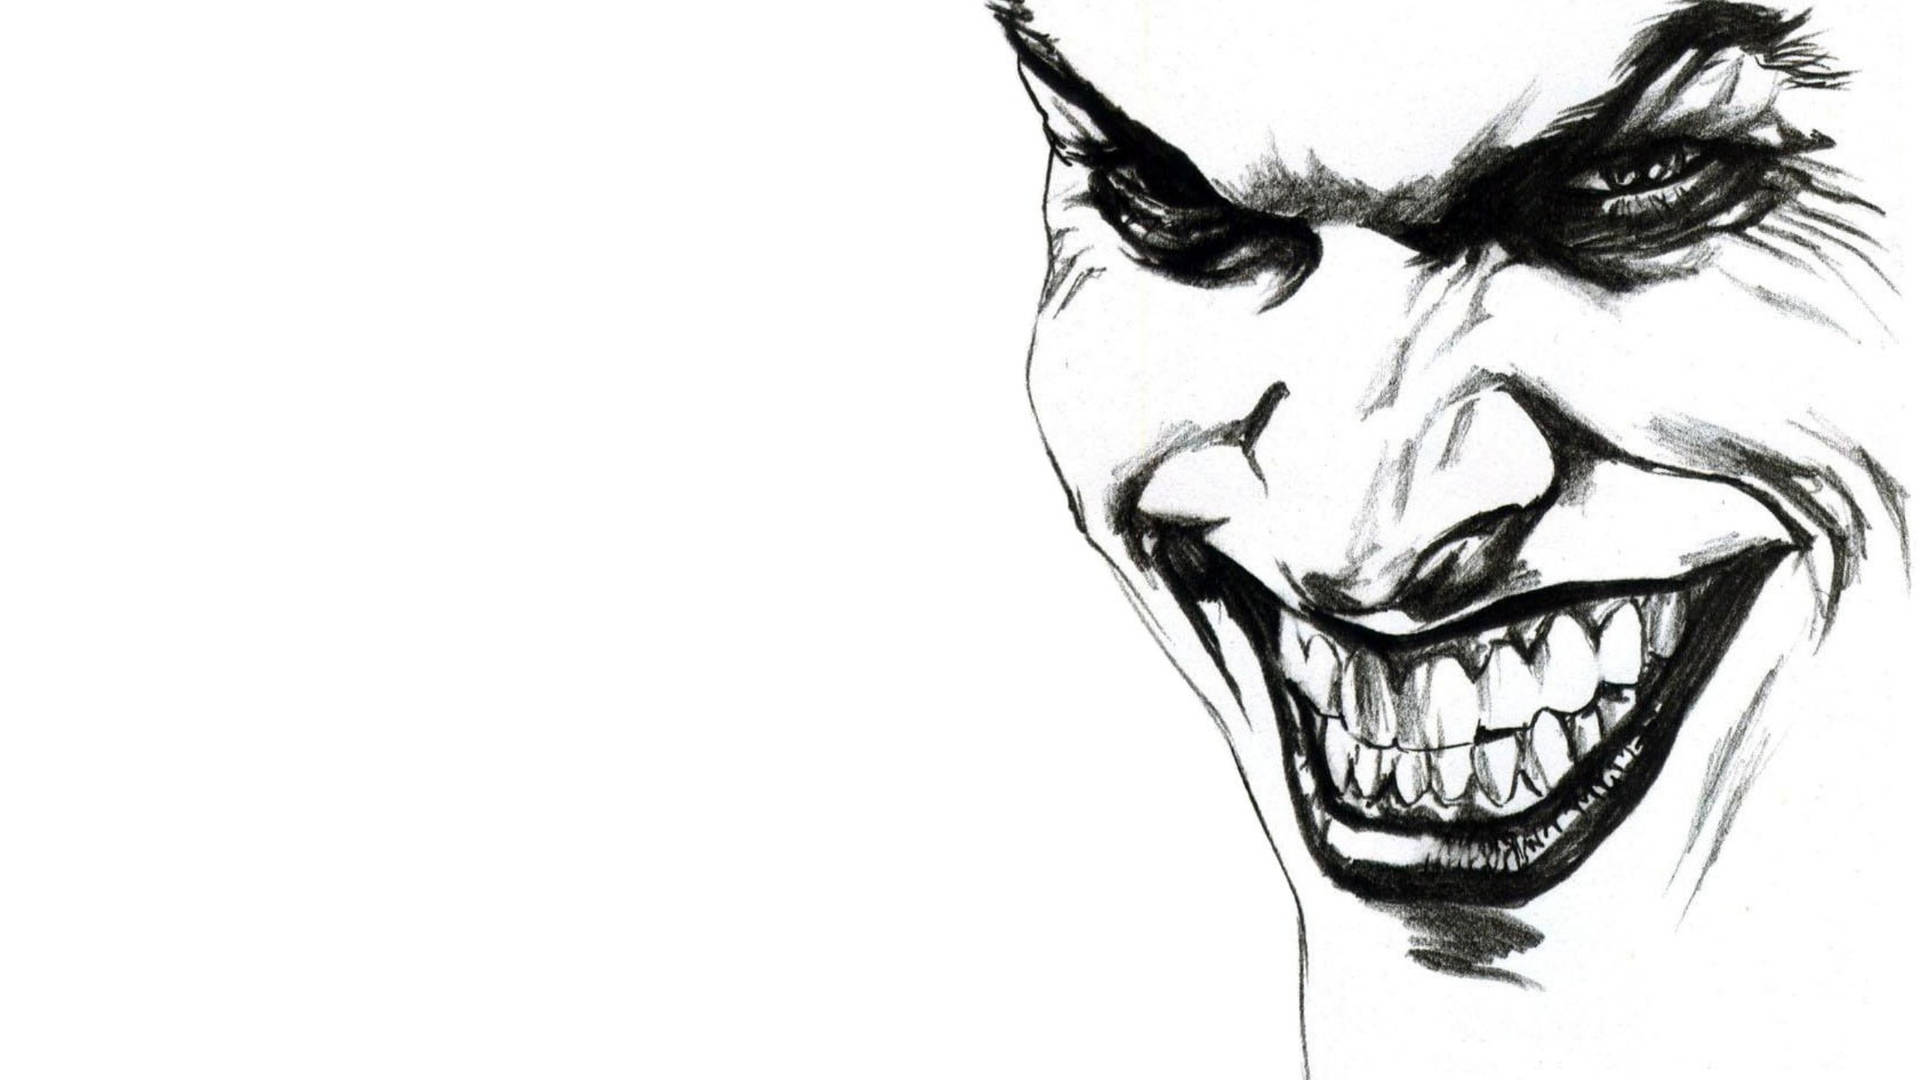 Joker drawing | Joker drawings, Joker art drawing, Joker sketch